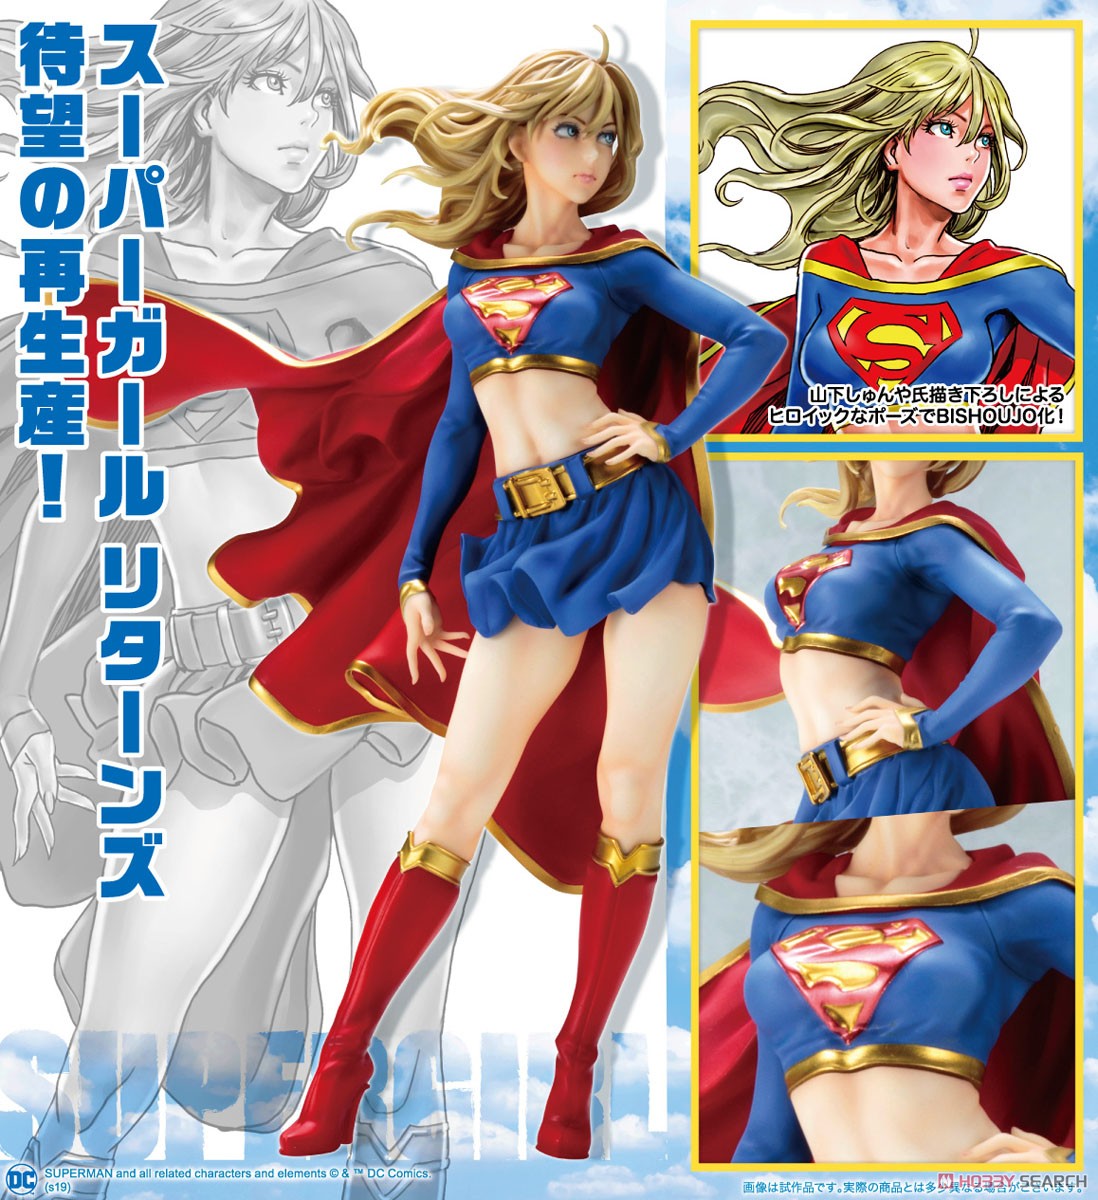 【再販】DC COMICS美少女『スーパーガール リターンズ』1/7 完成品フィギュア-011